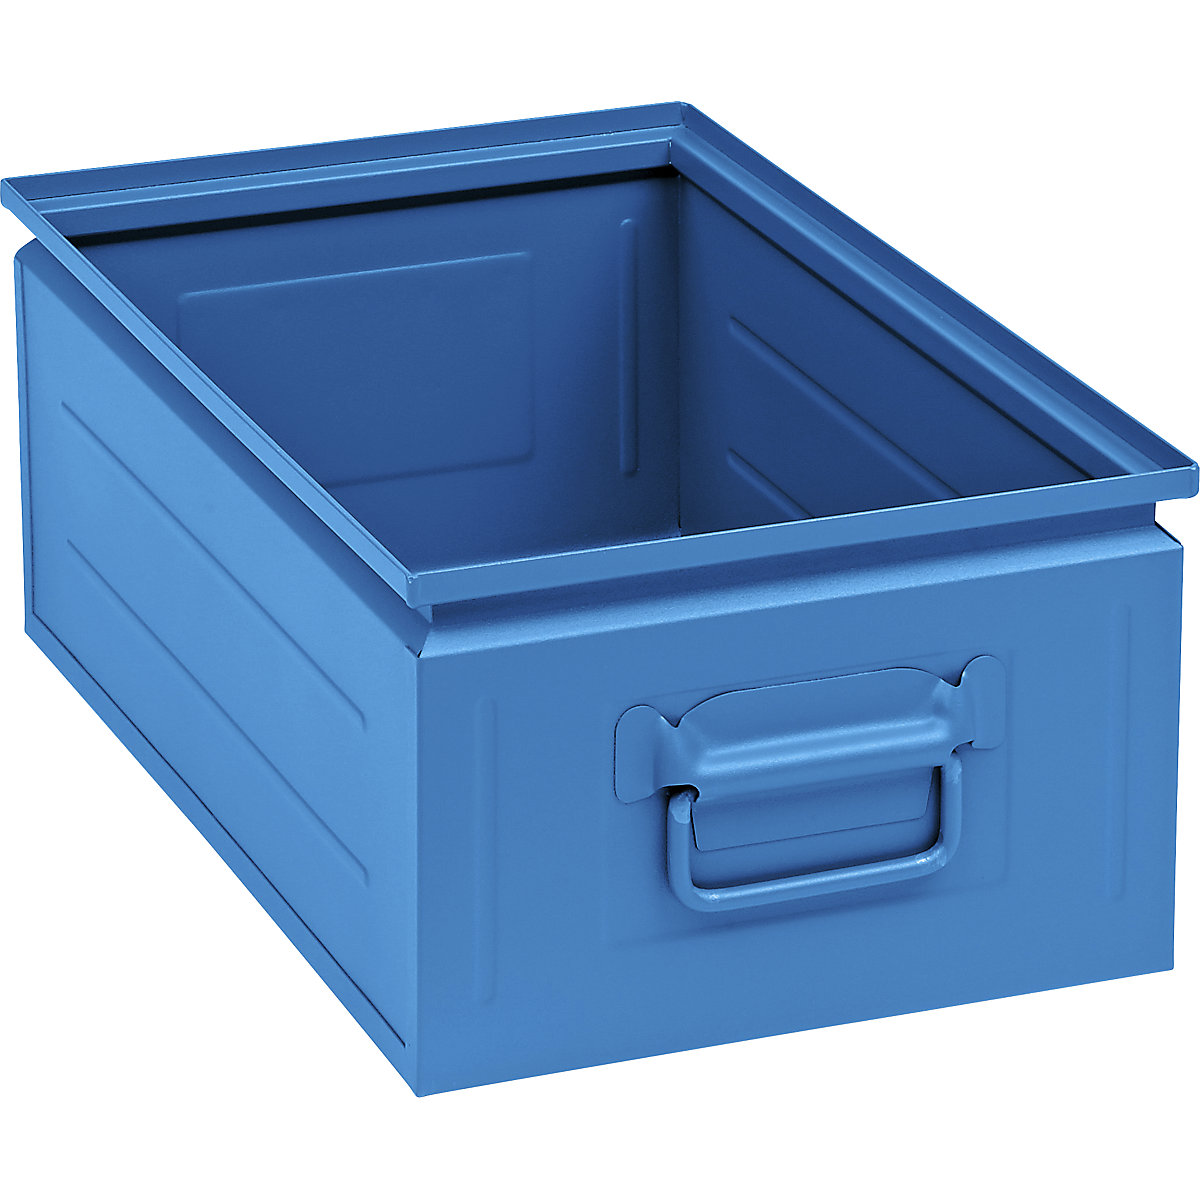 Stapelkasten aus Stahlblech, Inhalt ca. 30 l, lichtblau RAL 5012